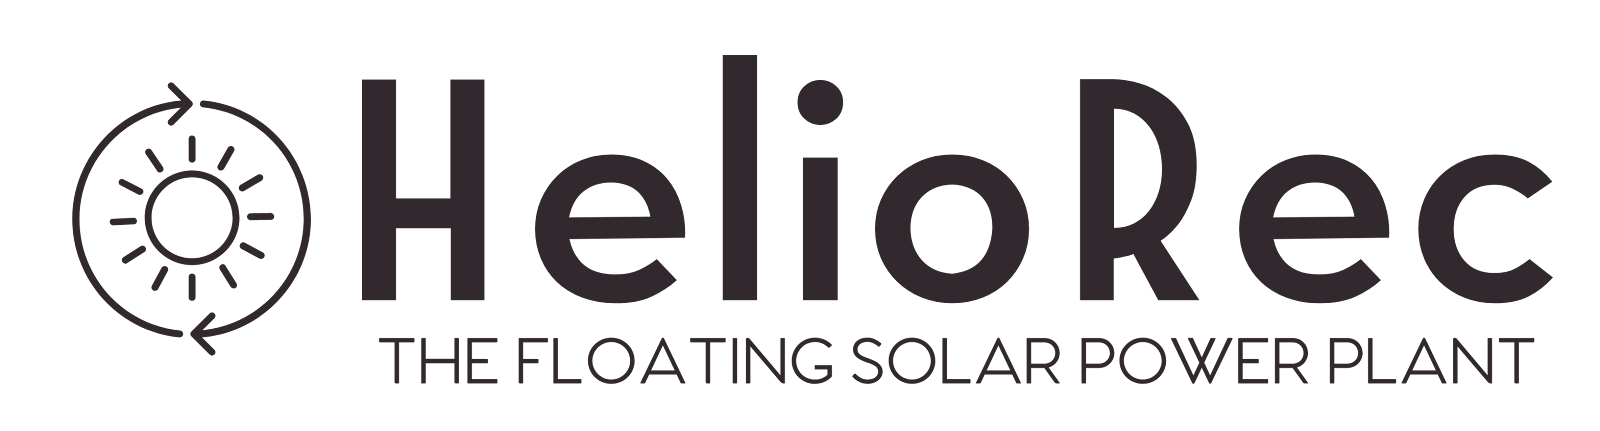 Floating Solar | Heliorec